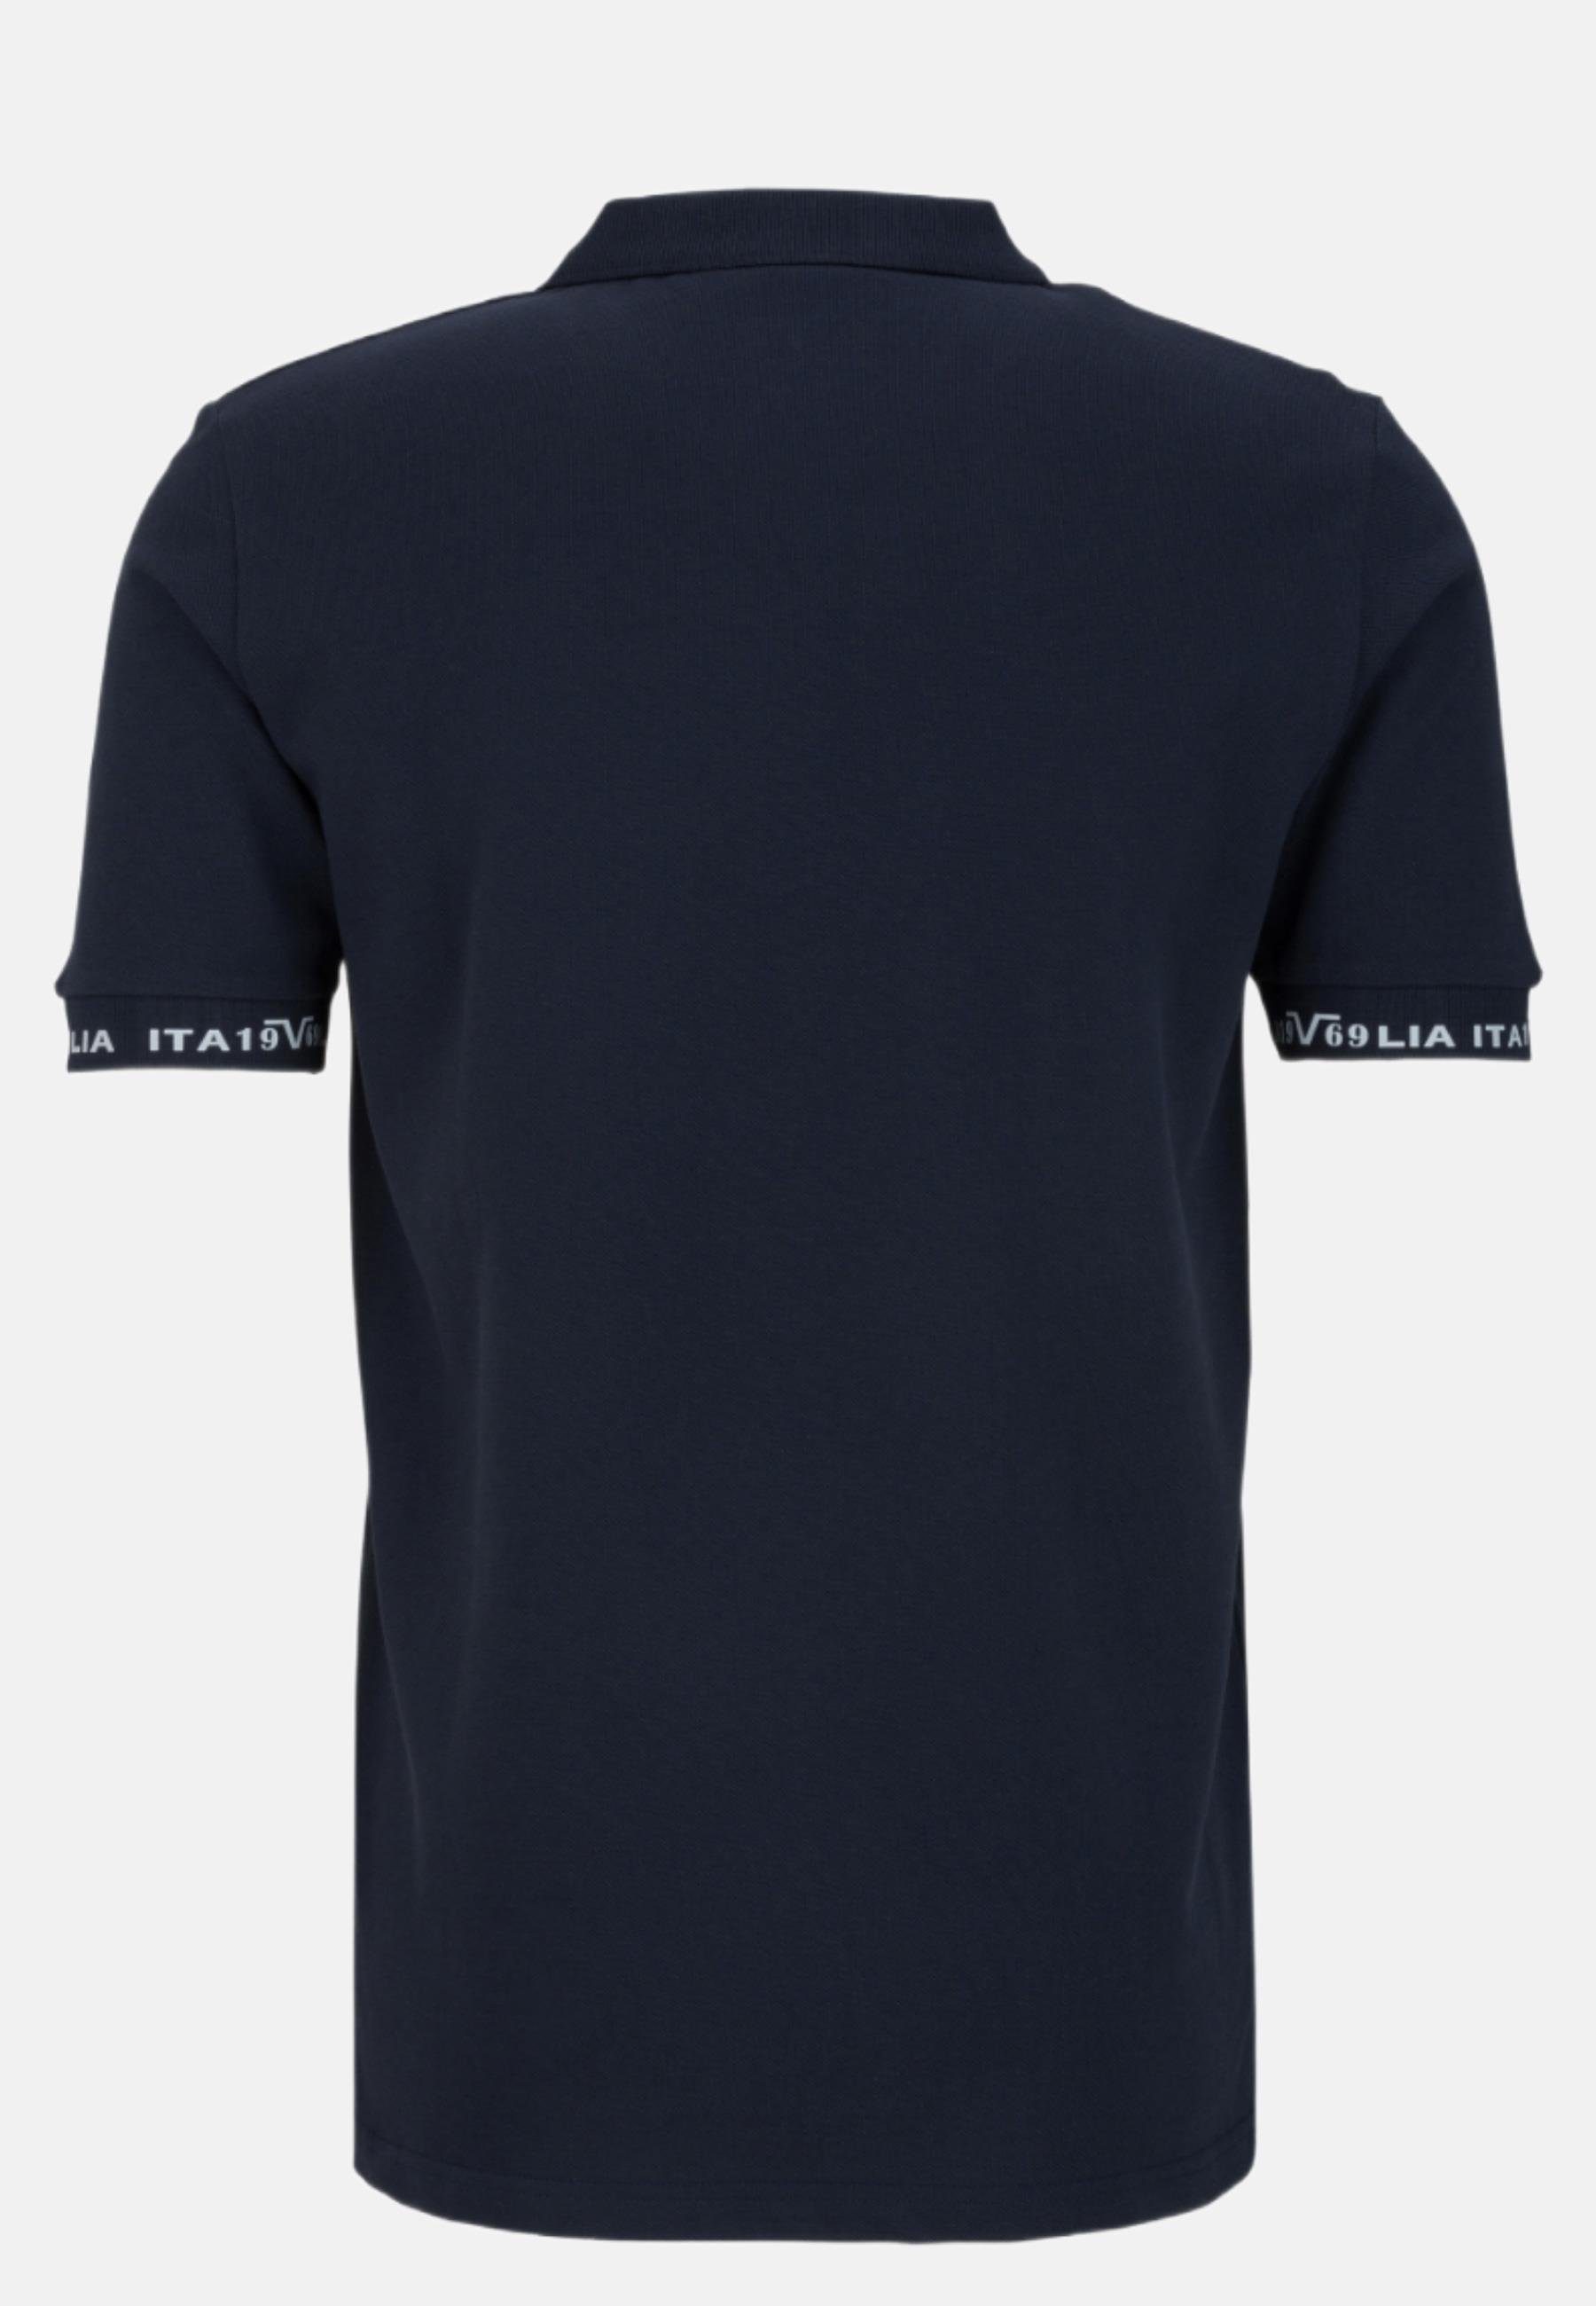 Harry Polo T-Shirt blau by Italia Versace Shirt 19V69